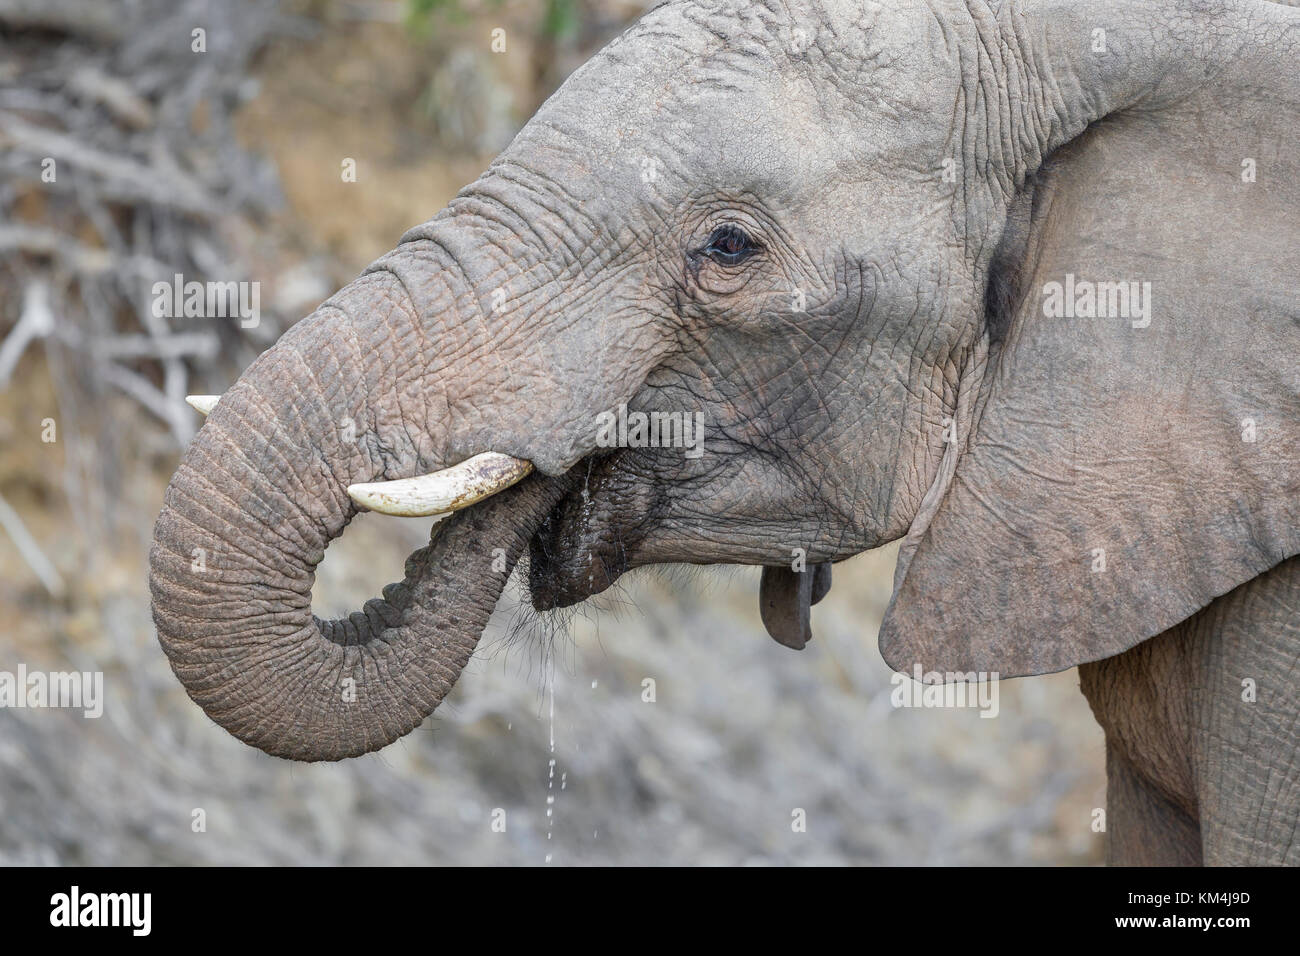 Elefante africano a bere, close up ritratto, con acqua che scorre verso il basso dalla sua bocca. Foto Stock